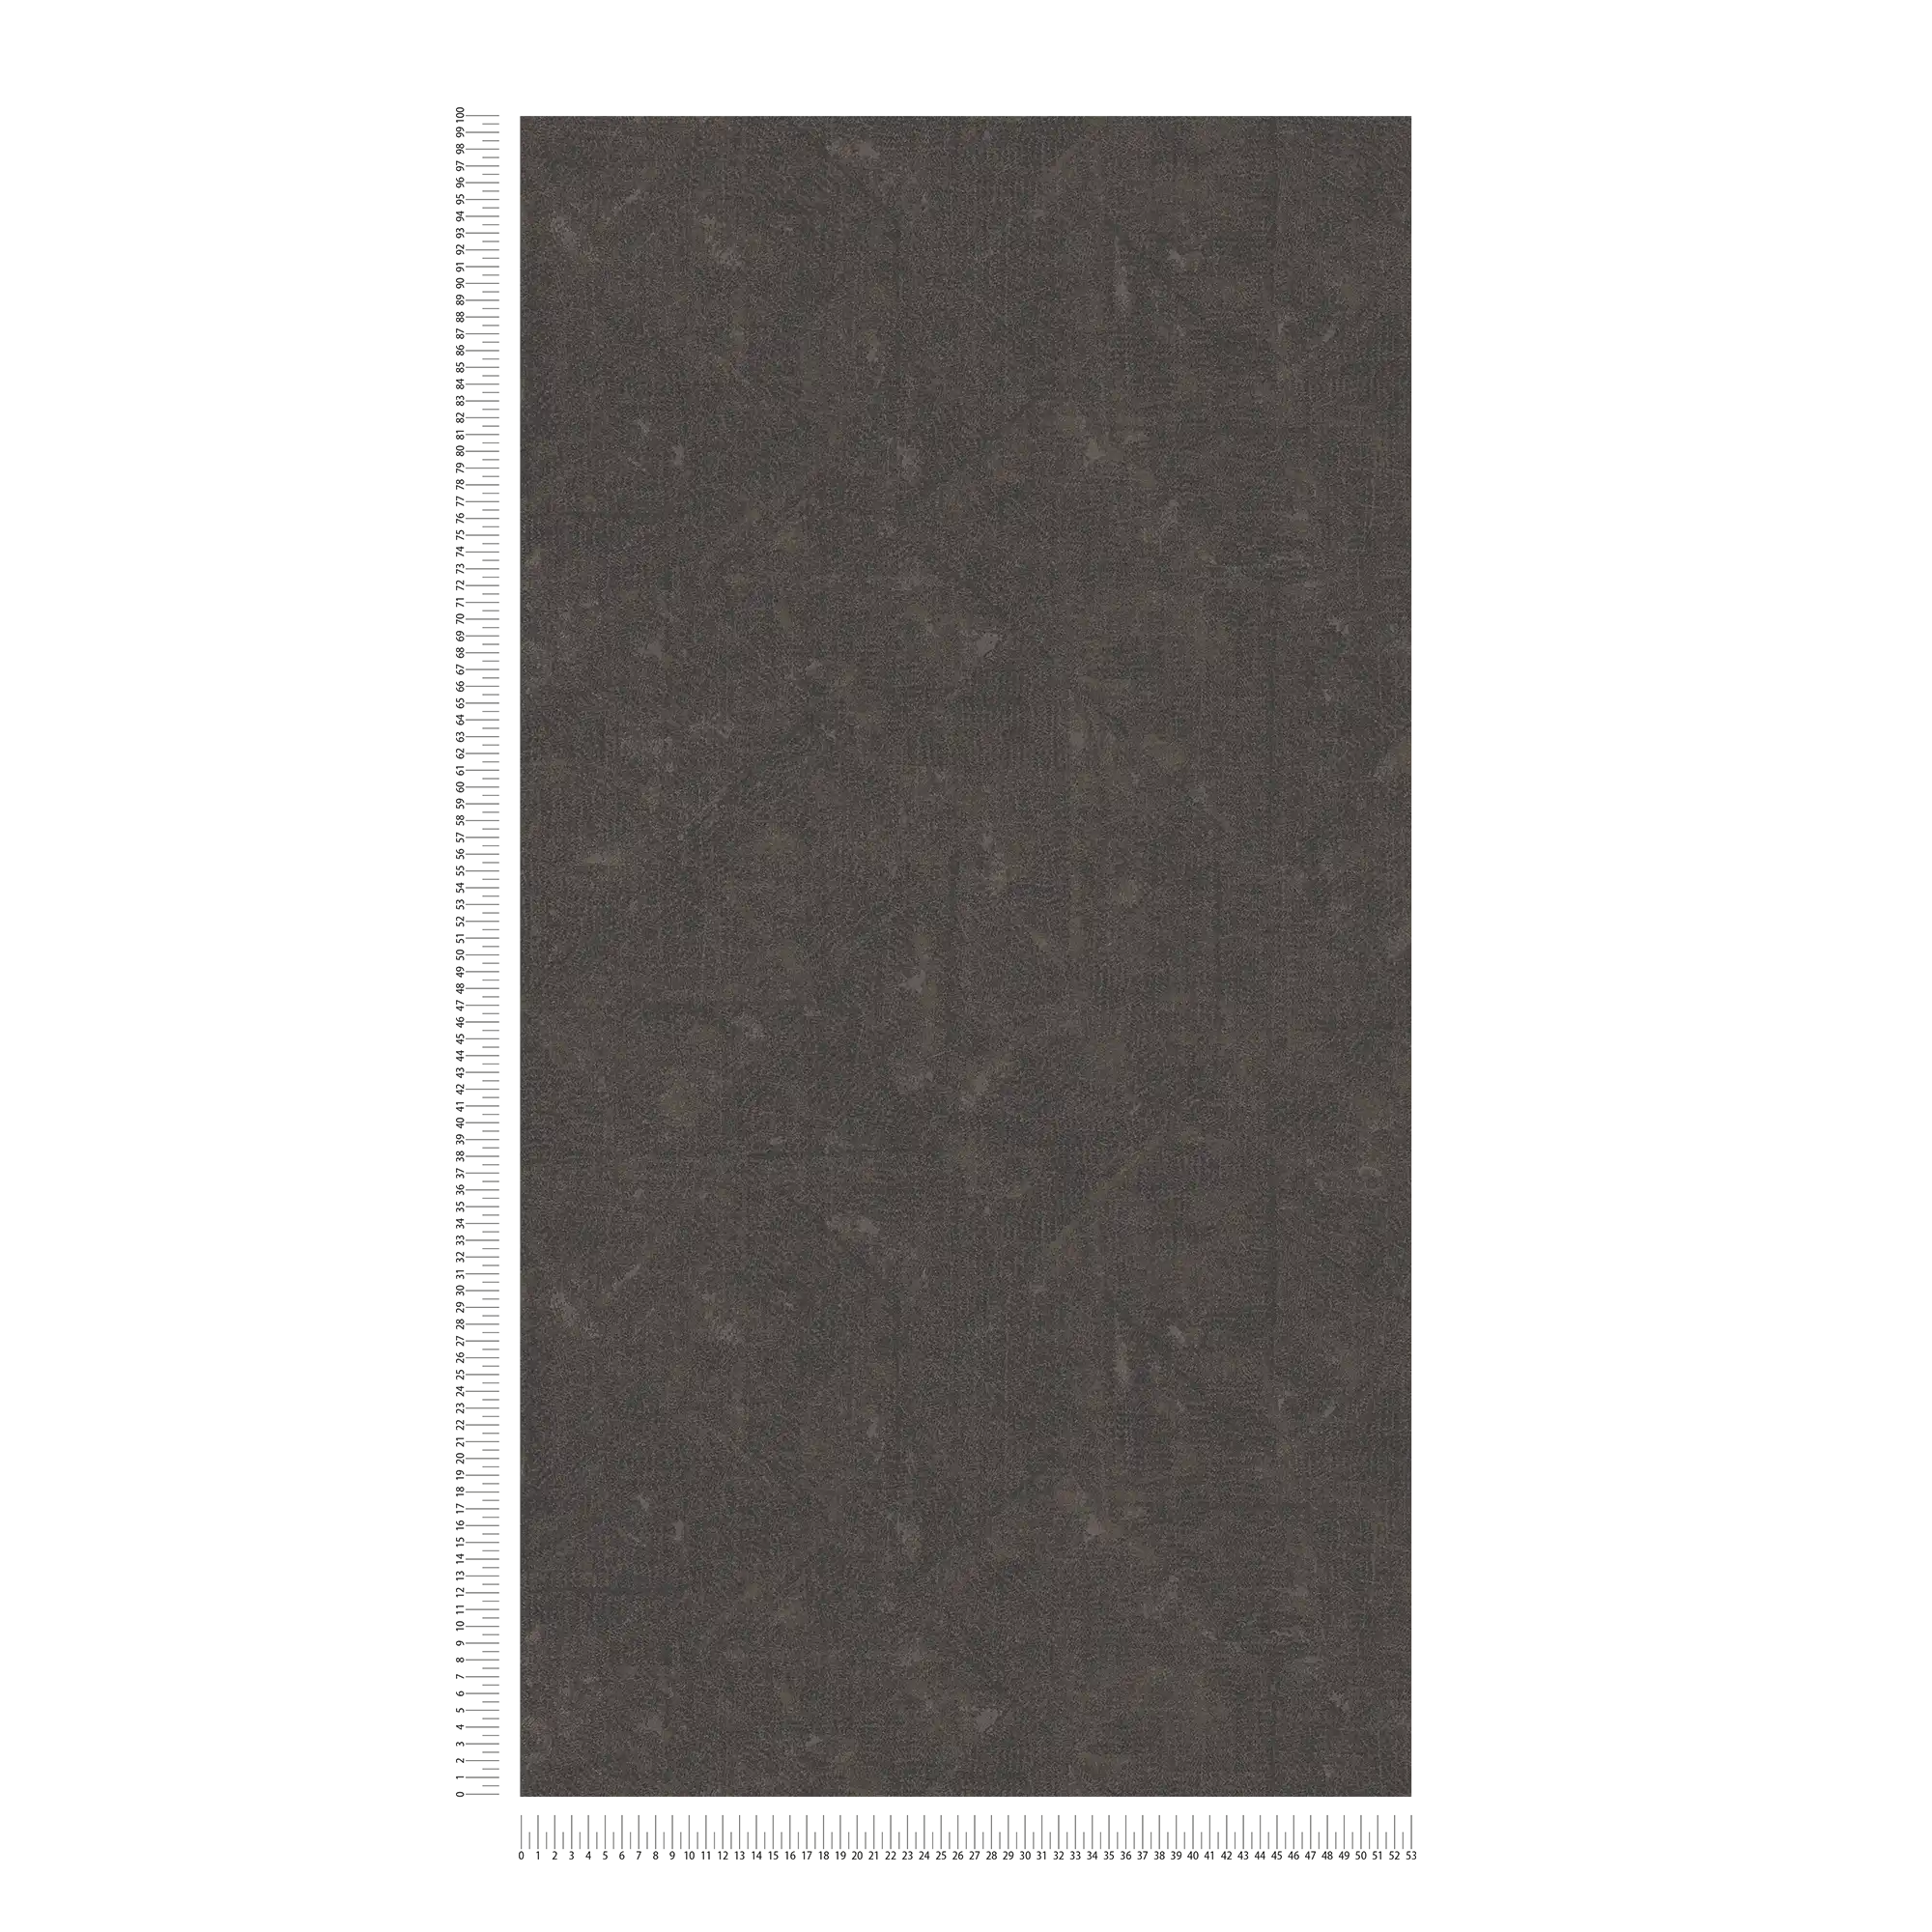             Donkerbruin vliesbehang met subtiel patroon - bruin, zwart, brons
        